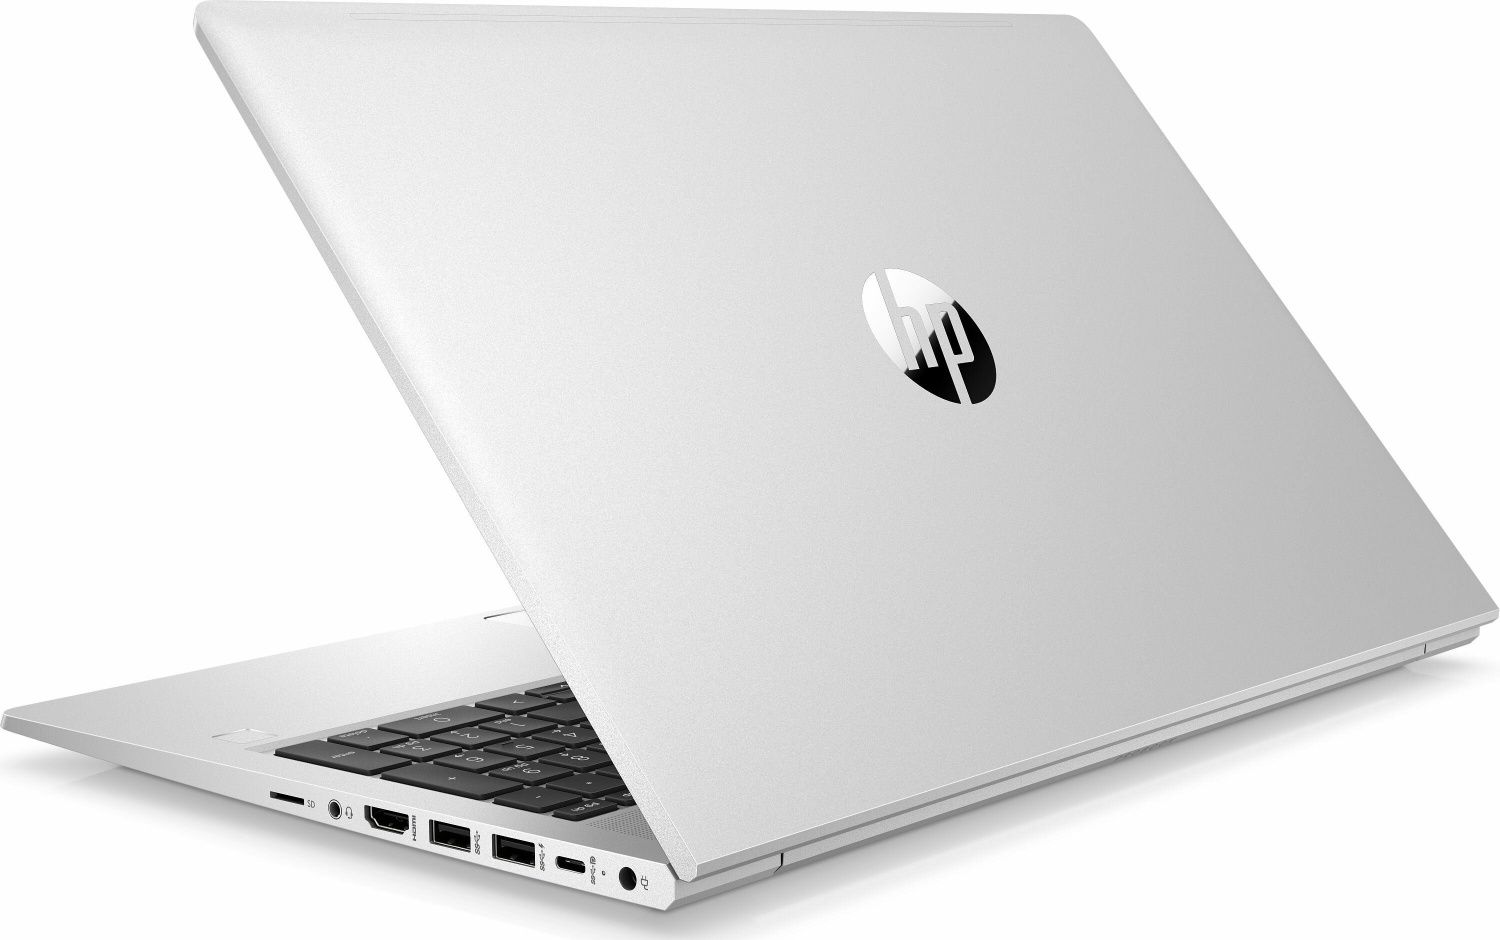 NOWY HP ProBook 450 G8, 2022r, d2d, IPS i5, 16GB,SSD 1Tb, Win10 Pro